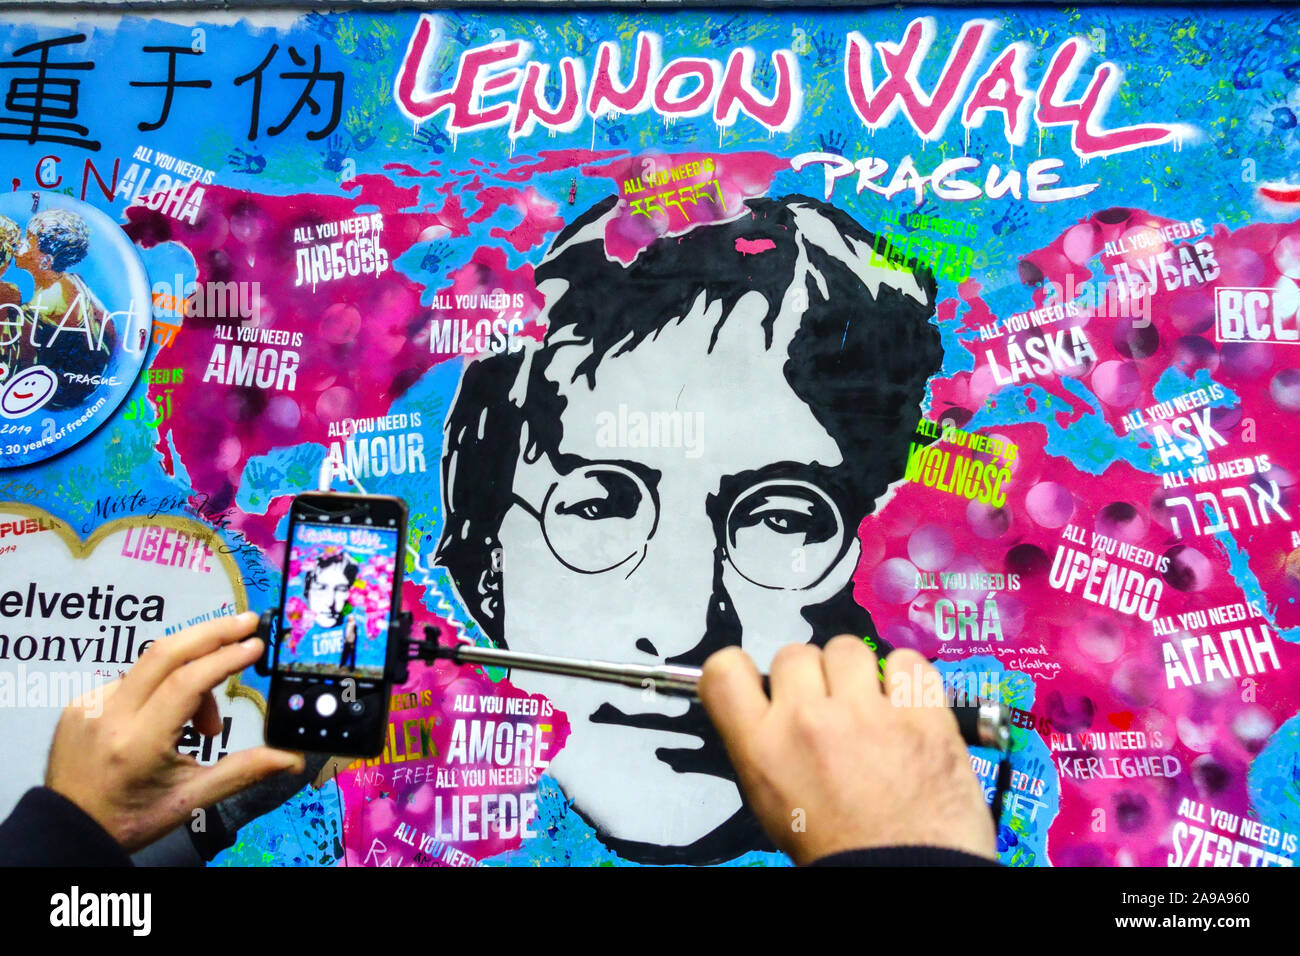 Uomo che scatta una foto su cellulare al John Lennon Wall Prague Street art graffiti Foto Stock